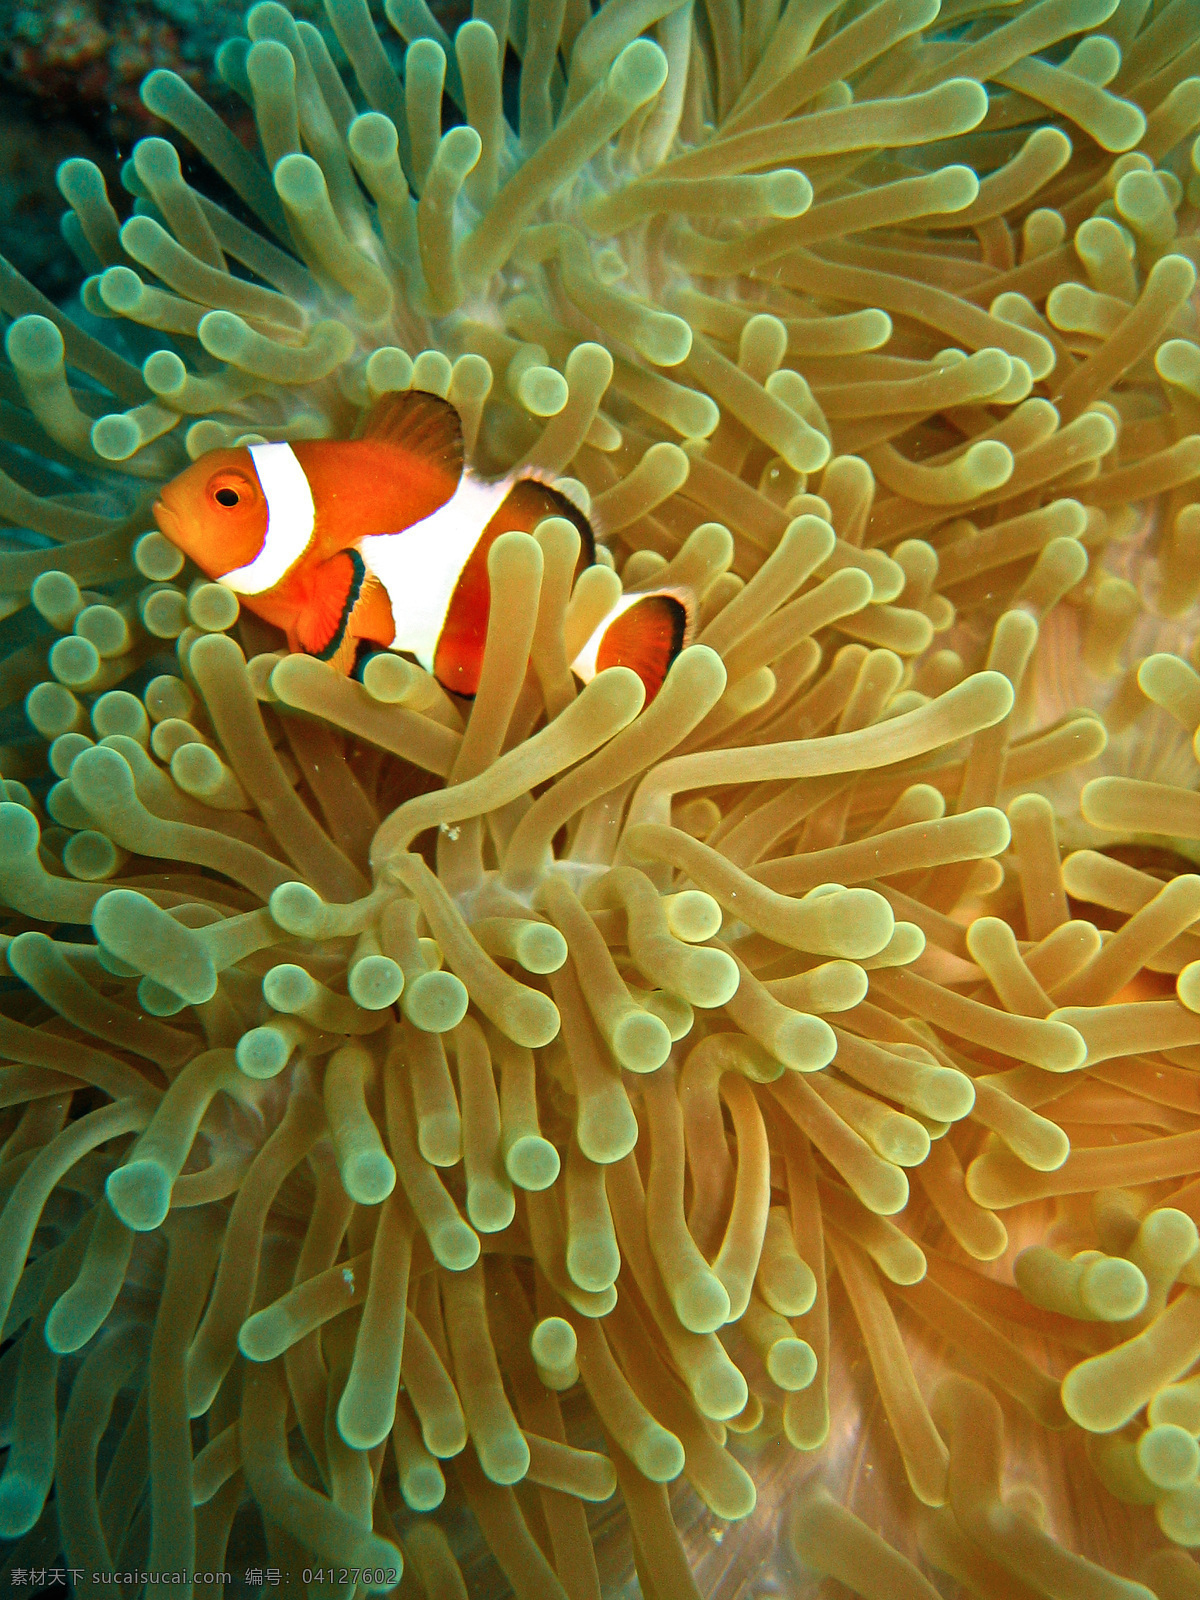 海底 世界 美丽 可爱 小丑 鱼 海底世界 小丑鱼 珊瑚 热带 潜水 发现 卡通 大自然保护 鱼类 东南亚 澳大利亚 生物世界